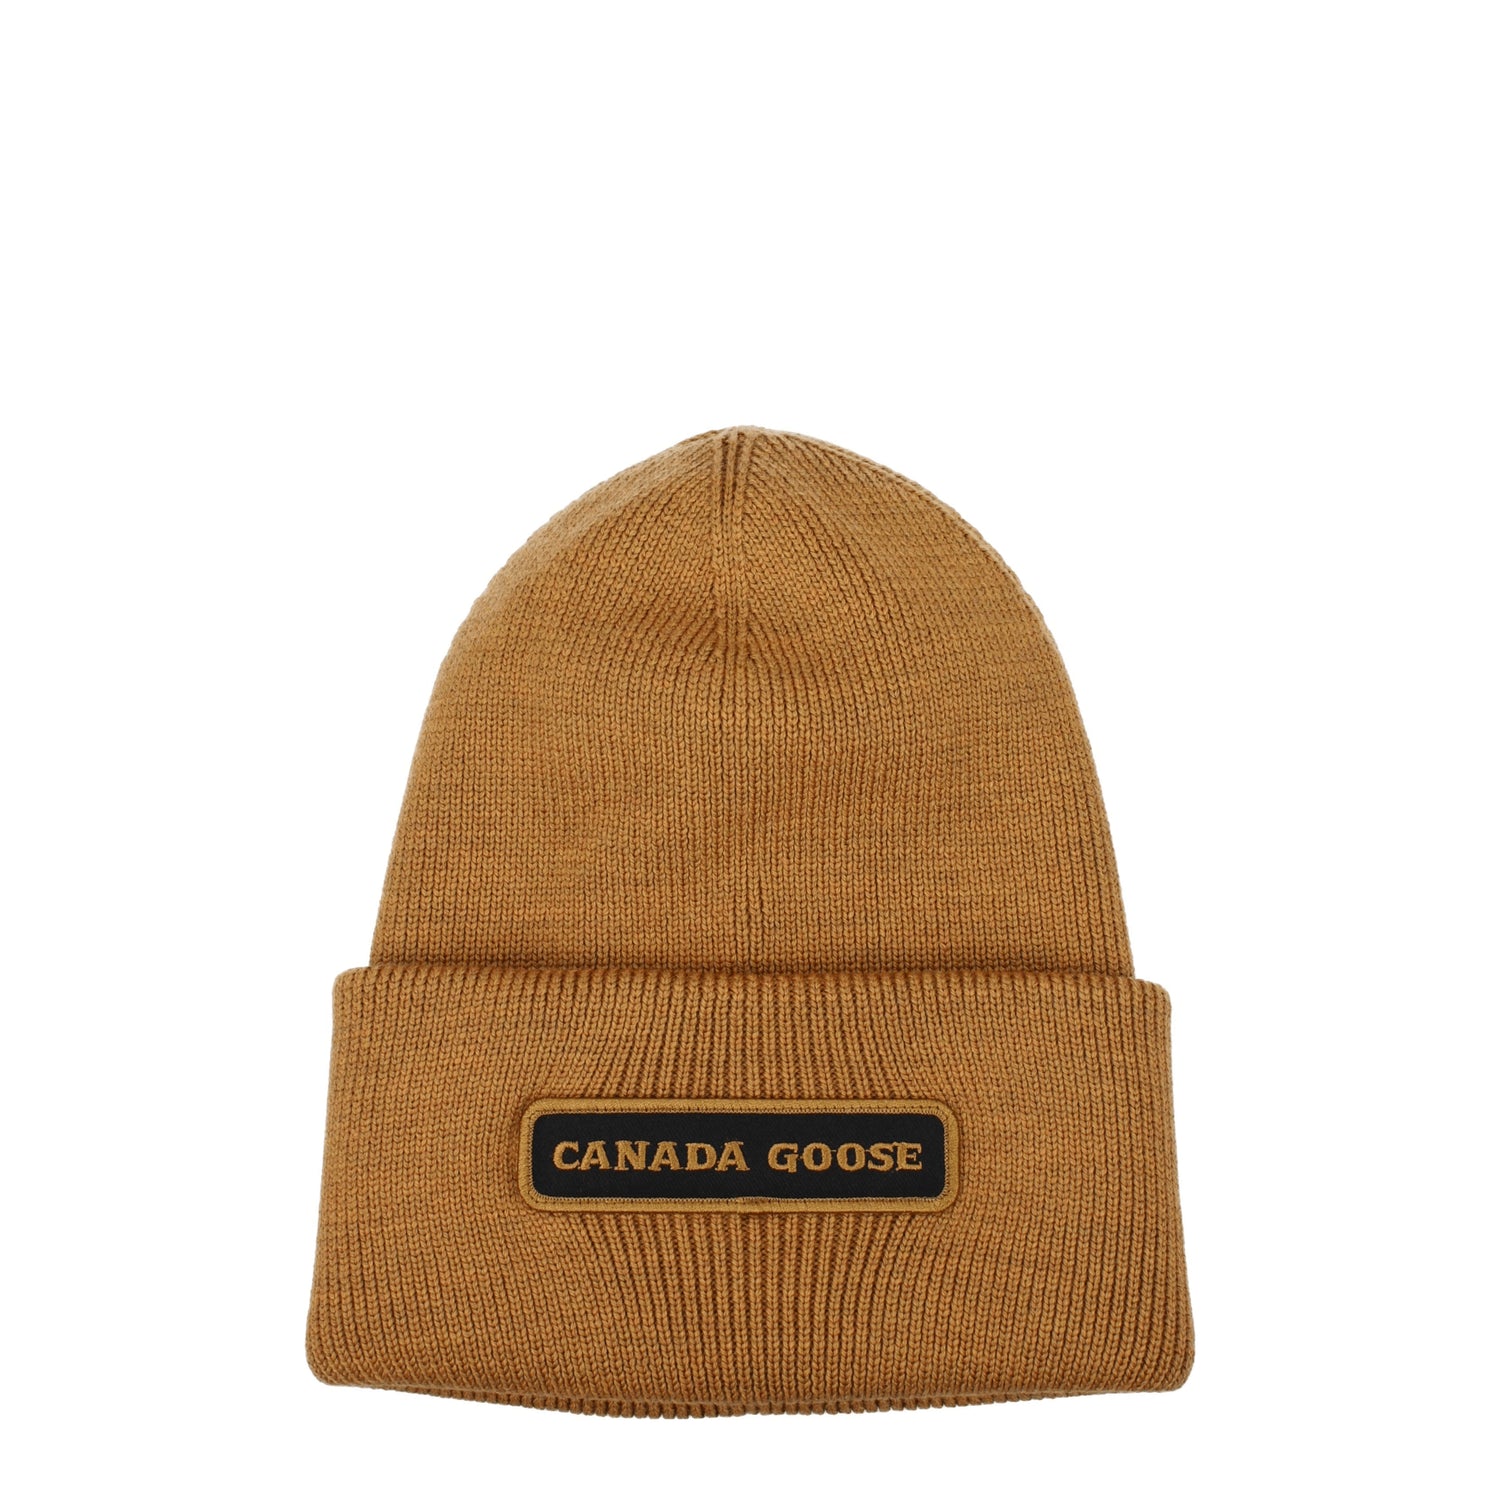 Canada Goose Cappelli emblem Uomo Lana Marrone Oro Antico